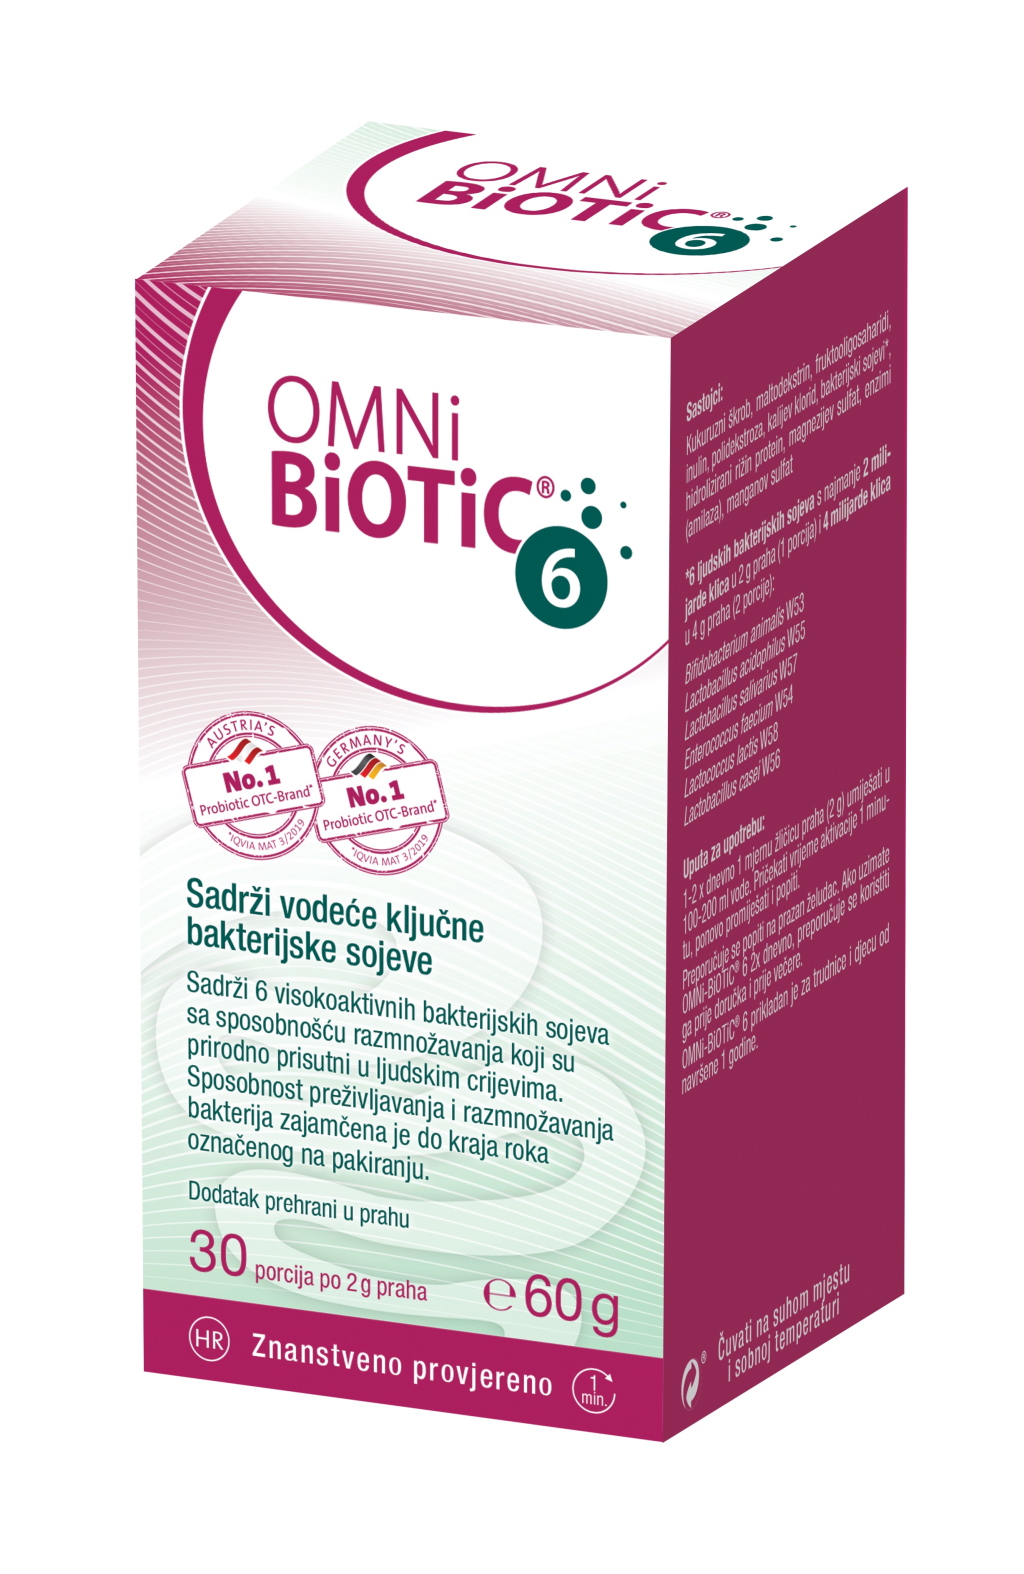 Snaga našeg imuniteta nalazi se u našim crijevima - OMNi-BiOTiC® 6